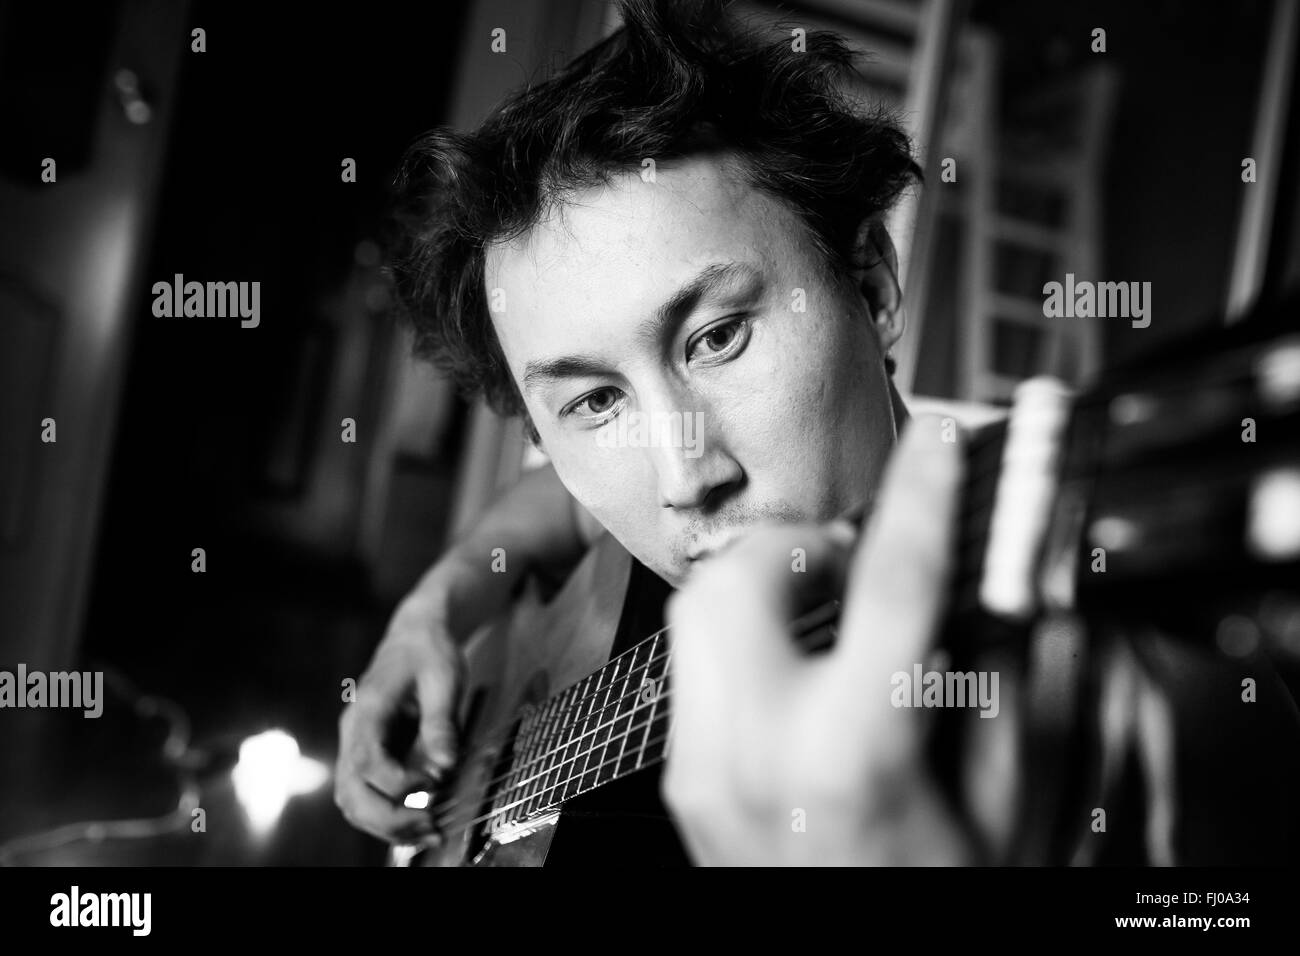 Crazy appassionato chitarrista suonando la chitarra, in bianco e nero di close-up verticale. Musicista con capelli disheveled. Foto Stock